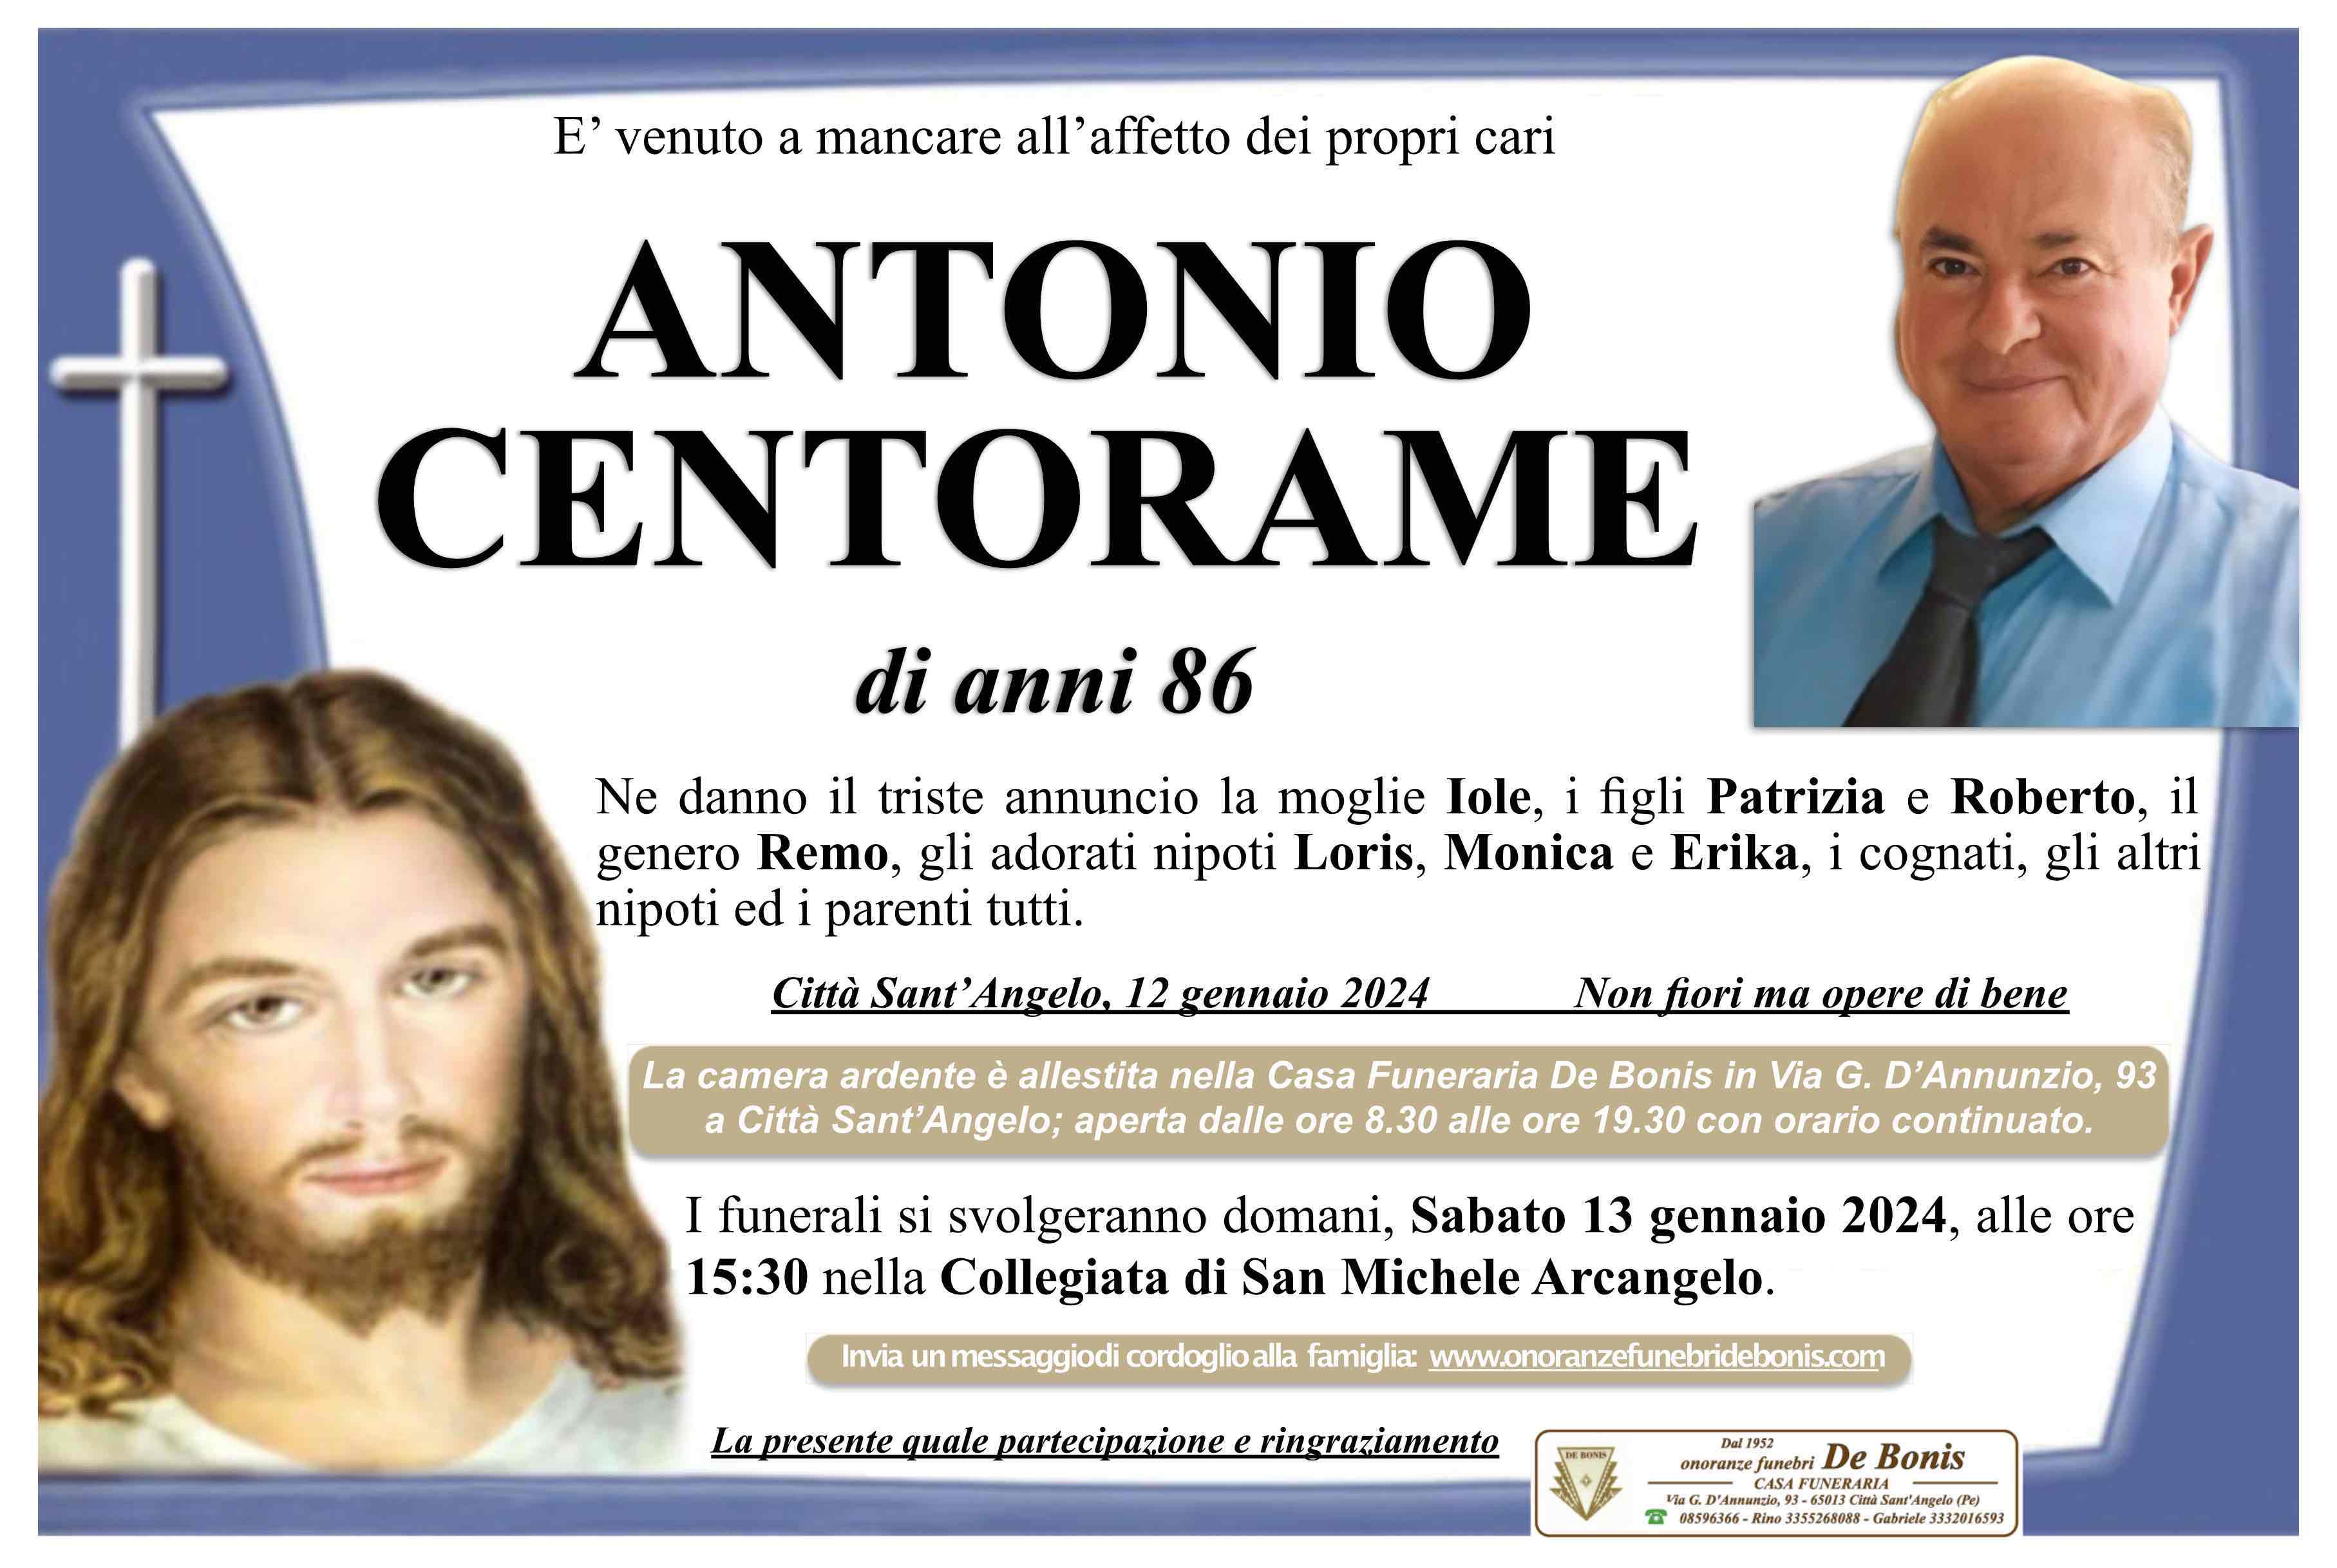 Antonio Centorame